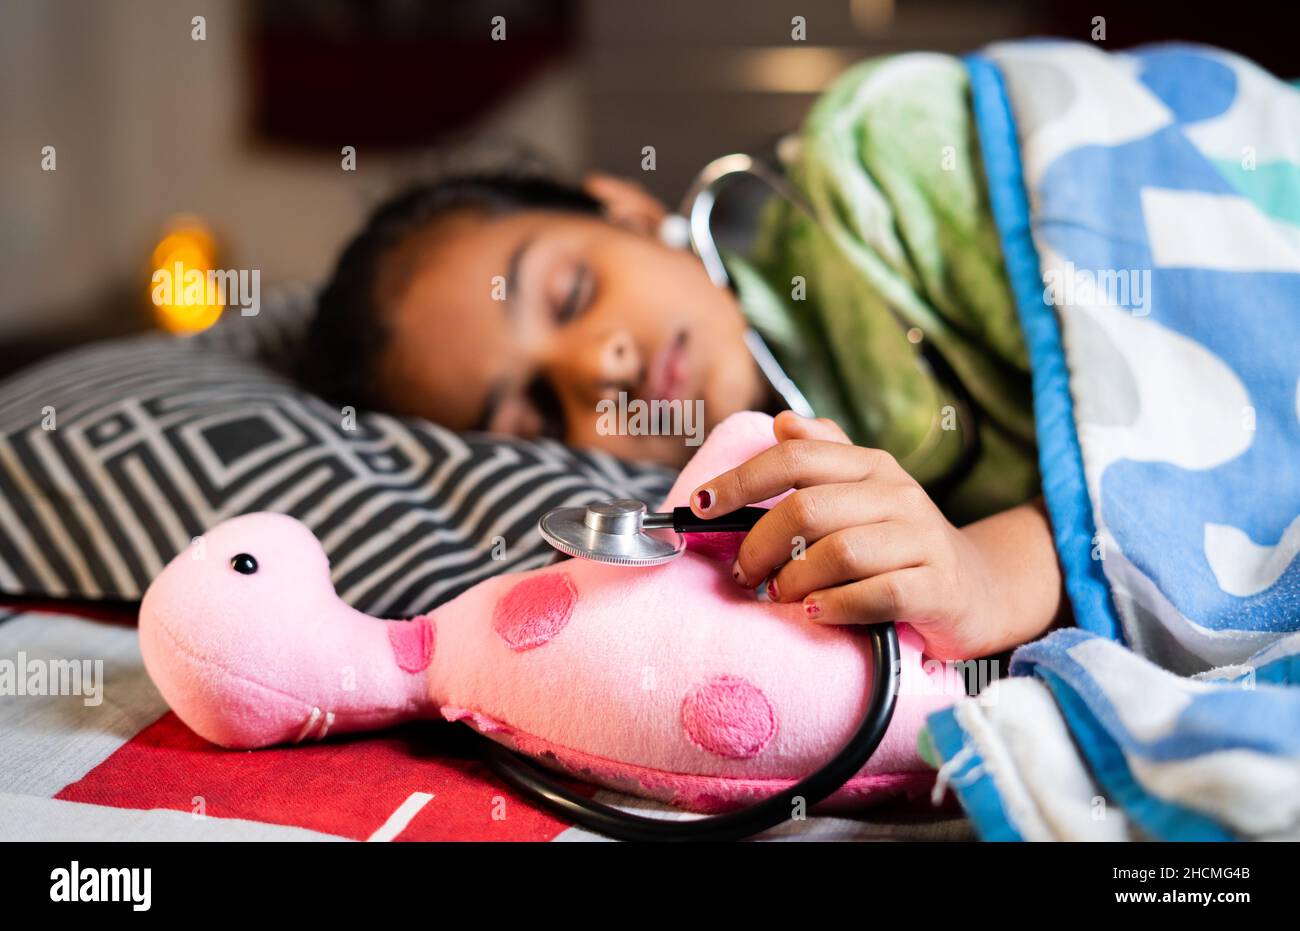 Teenager Kind schläft, indem sie Stethoskop und Puppe auf dem Bett - Konzept der Wunsch zum Arzt, Kindheitsträume und Bestrebungen. Stockfoto